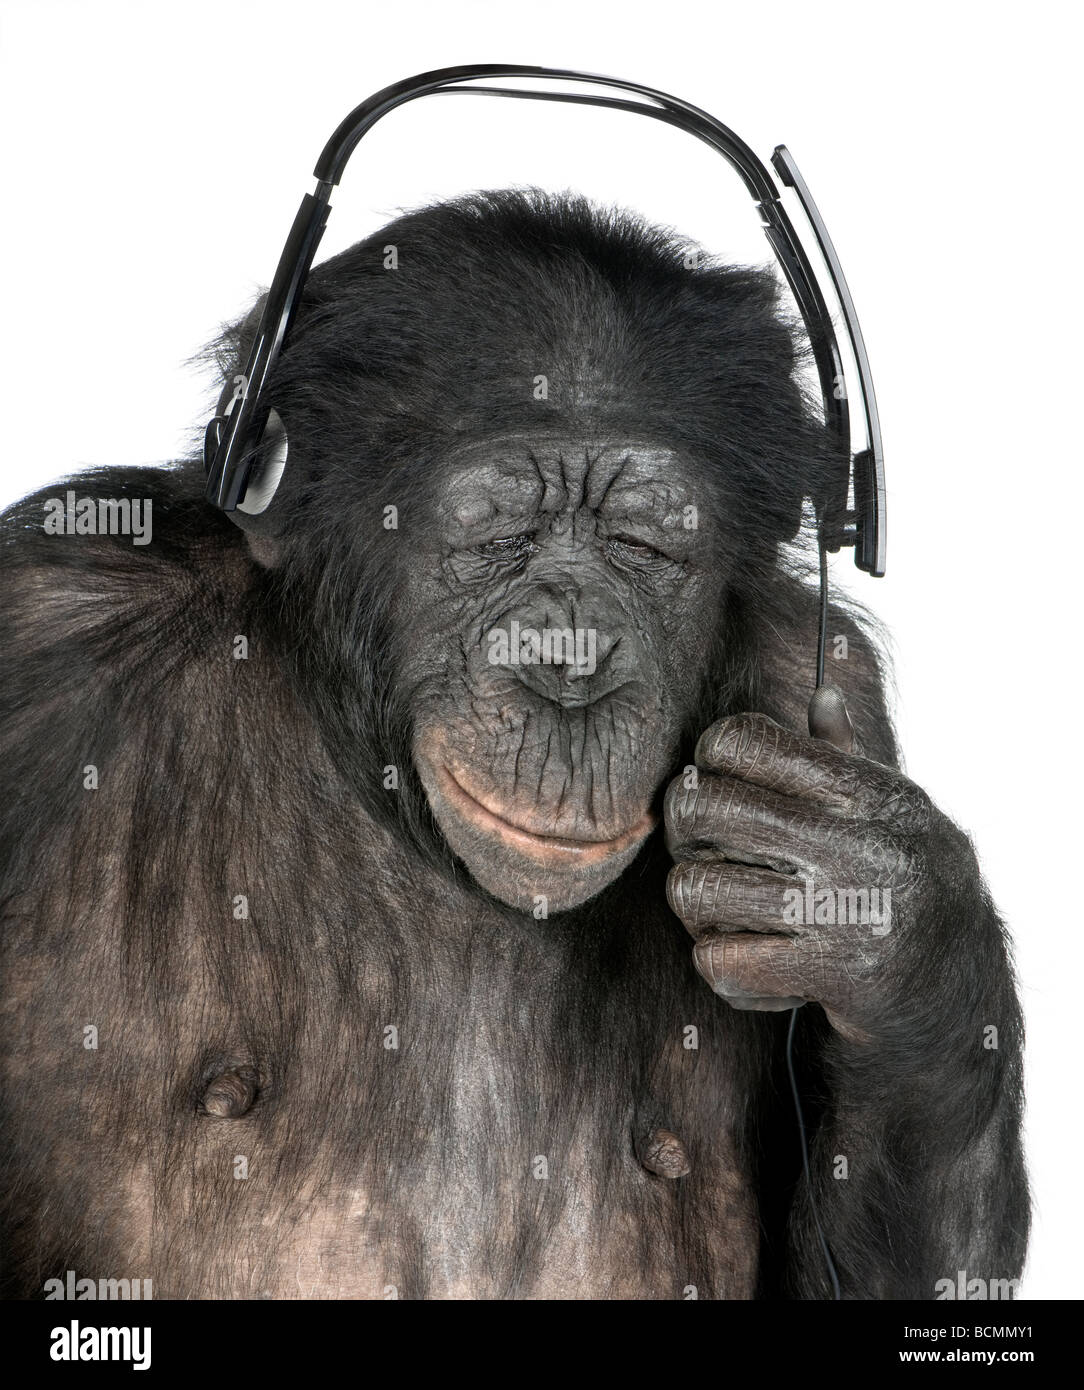 Singe, race mélangée entre le chimpanzé et Bonobo, 20 ans, listening to music on headphones in front of white background Banque D'Images